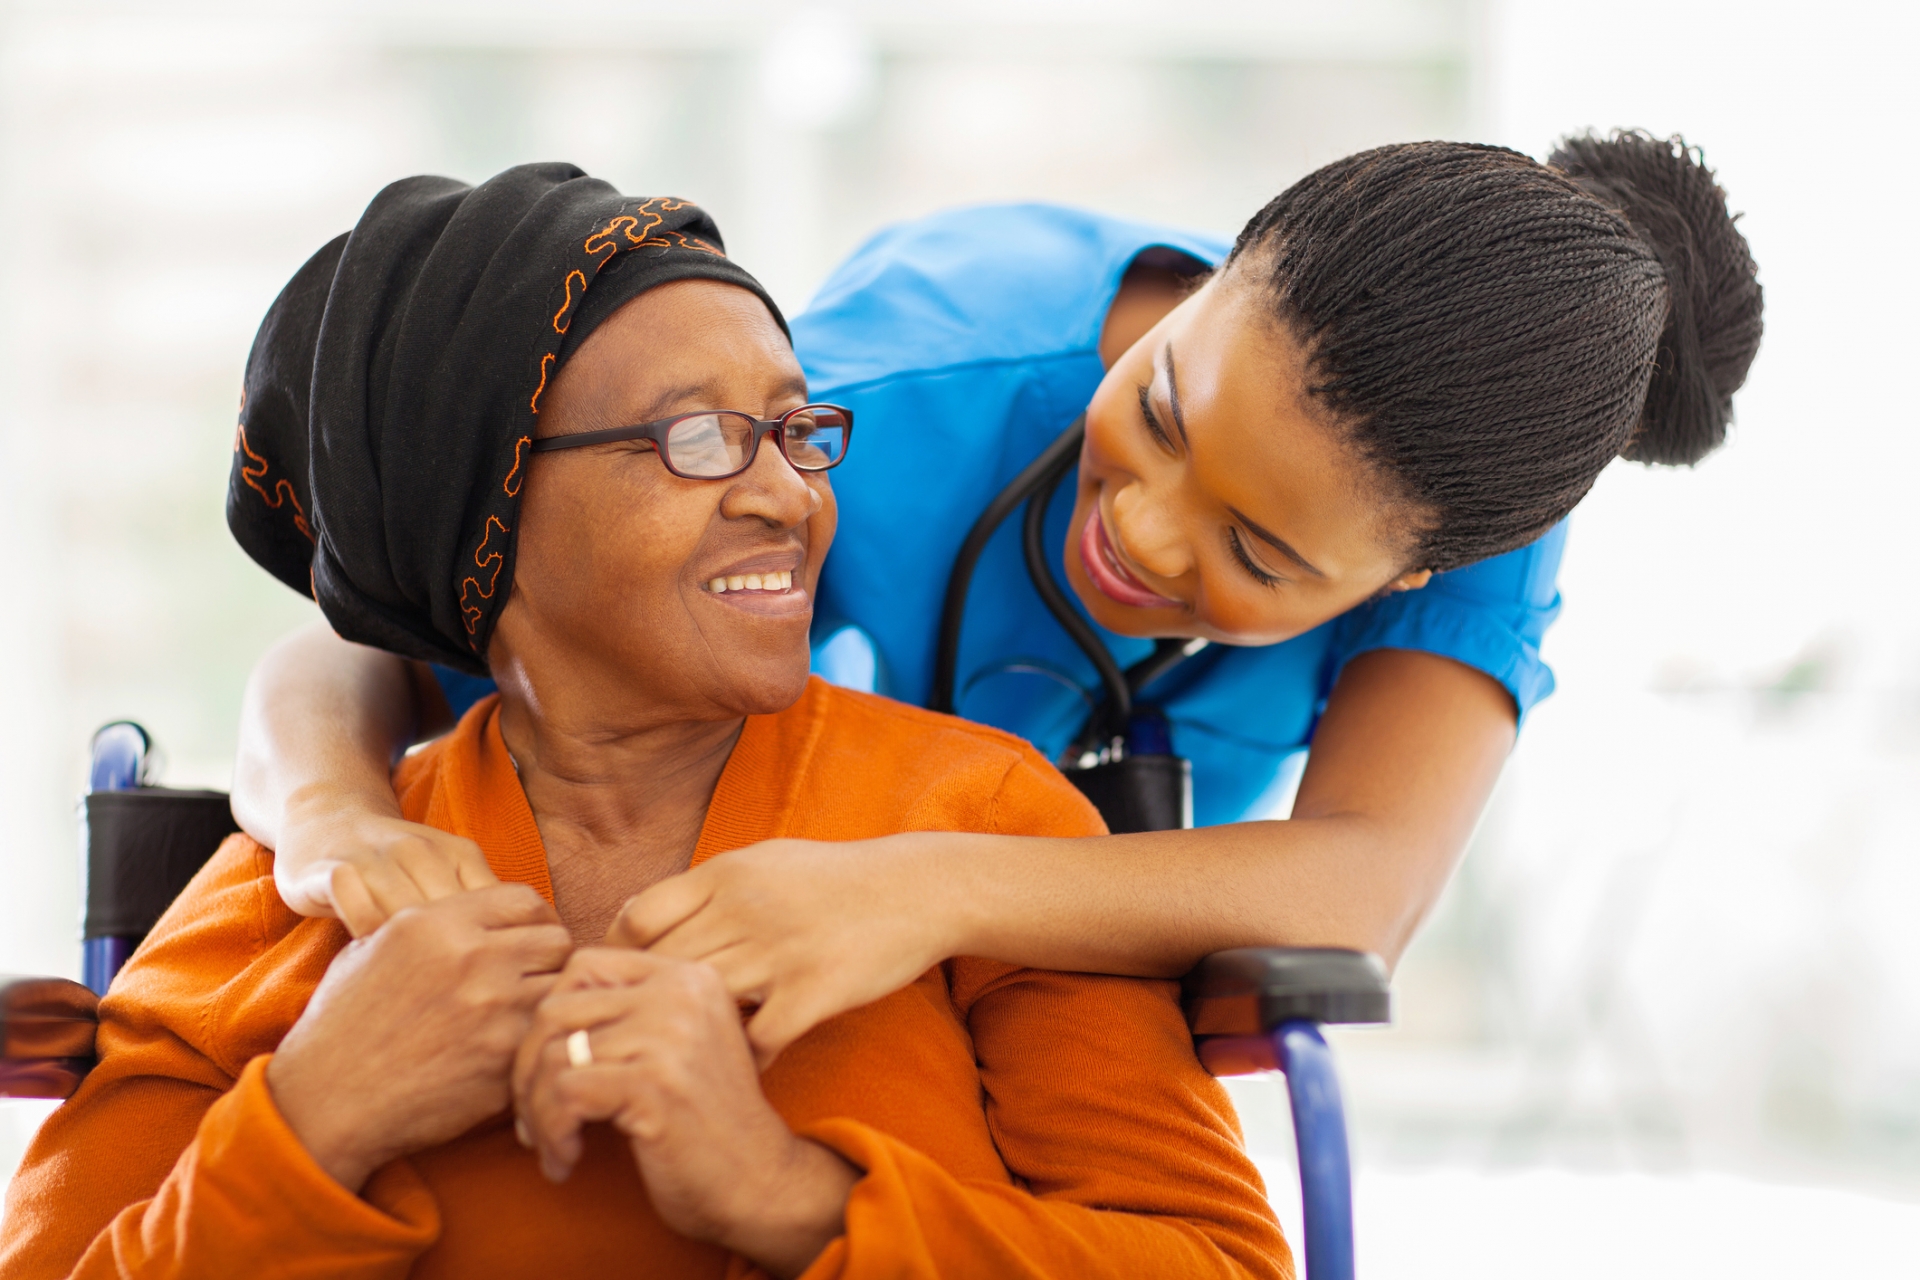 Giovane infermiera servizio sociale con una signora anziana